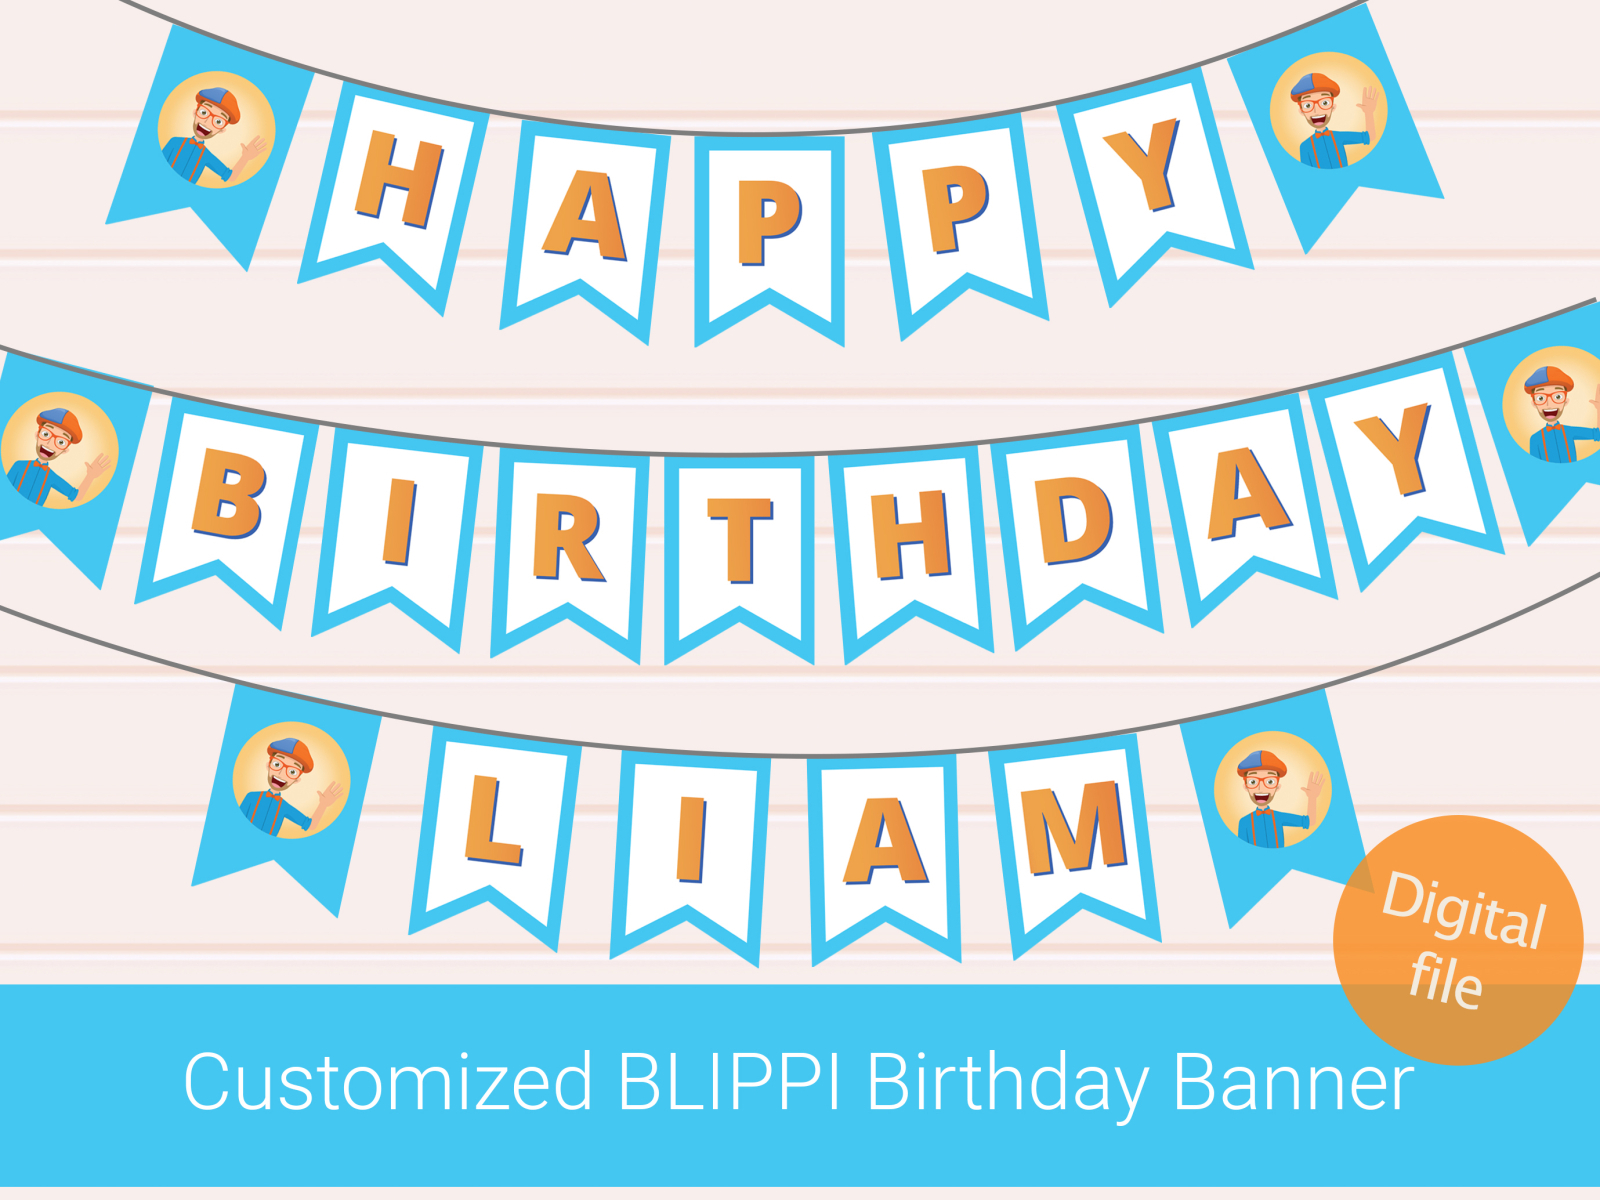 blippi birthday banner by Maze_Studio_GD on Dribbble